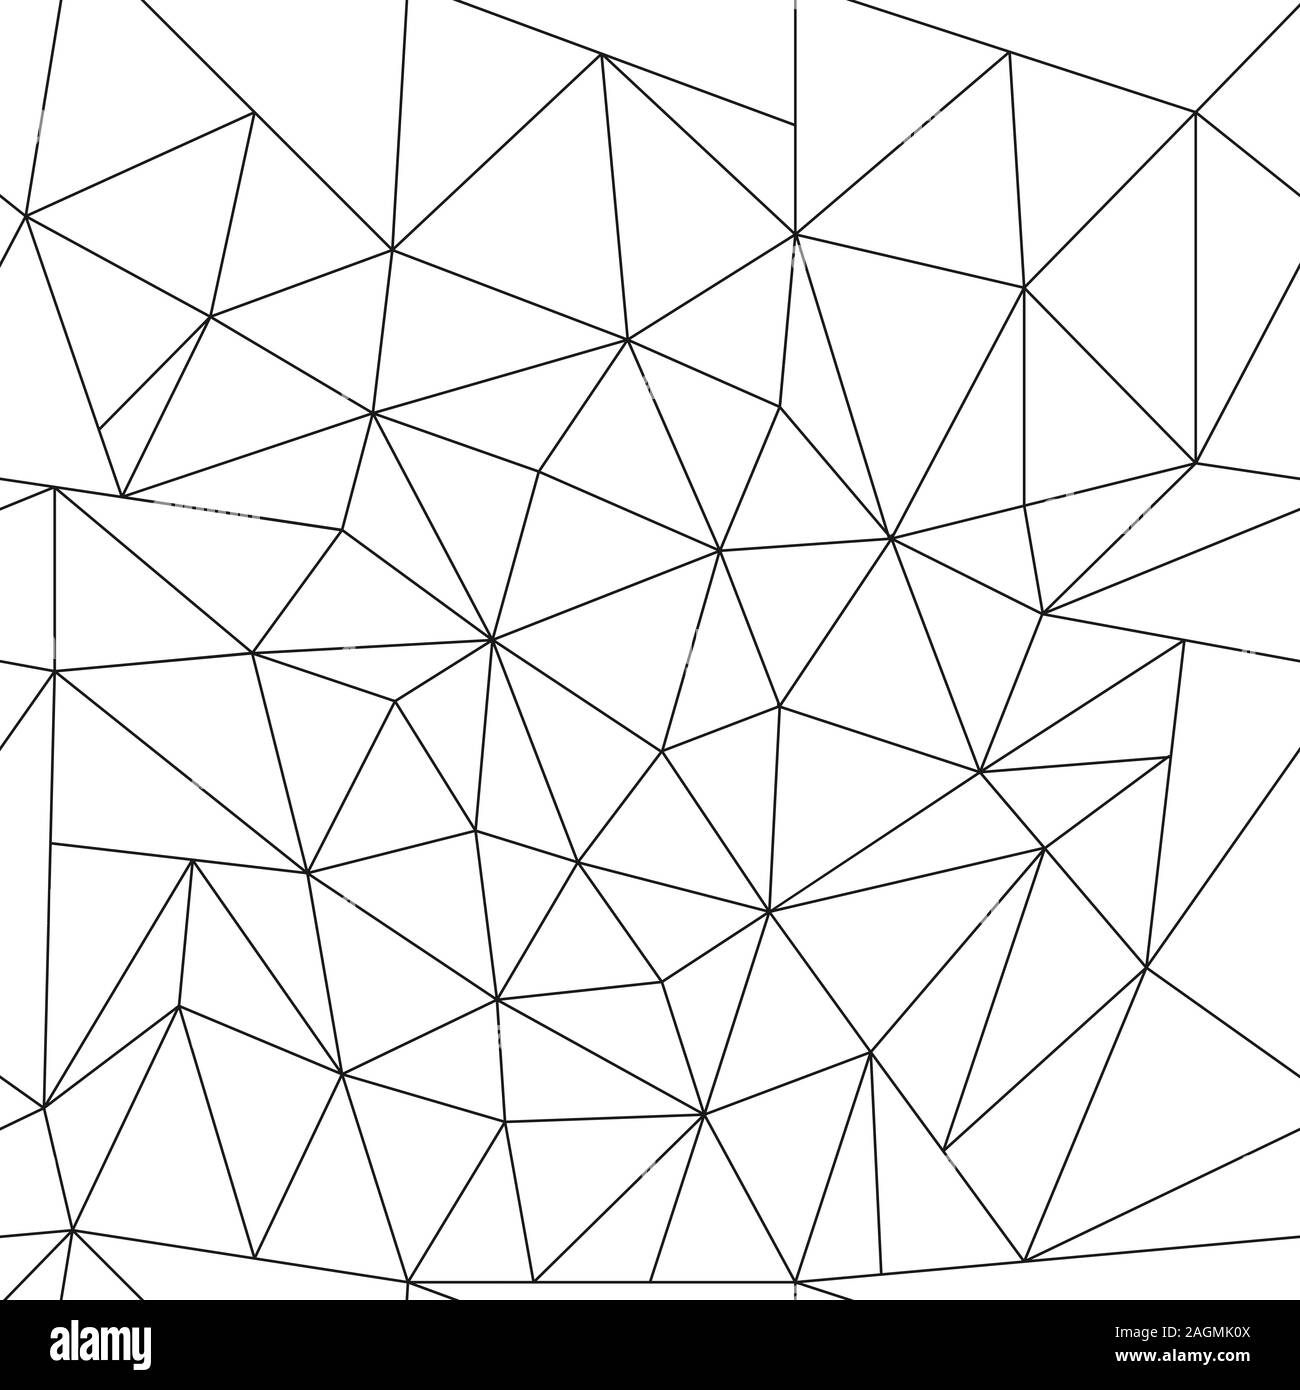 Seamless astratta contorno poligonale pattern vuoto. Un modello di caotico triangoli vuoti. Semplice design. Isolato su sfondo bianco. Colorin senza giunture Illustrazione Vettoriale